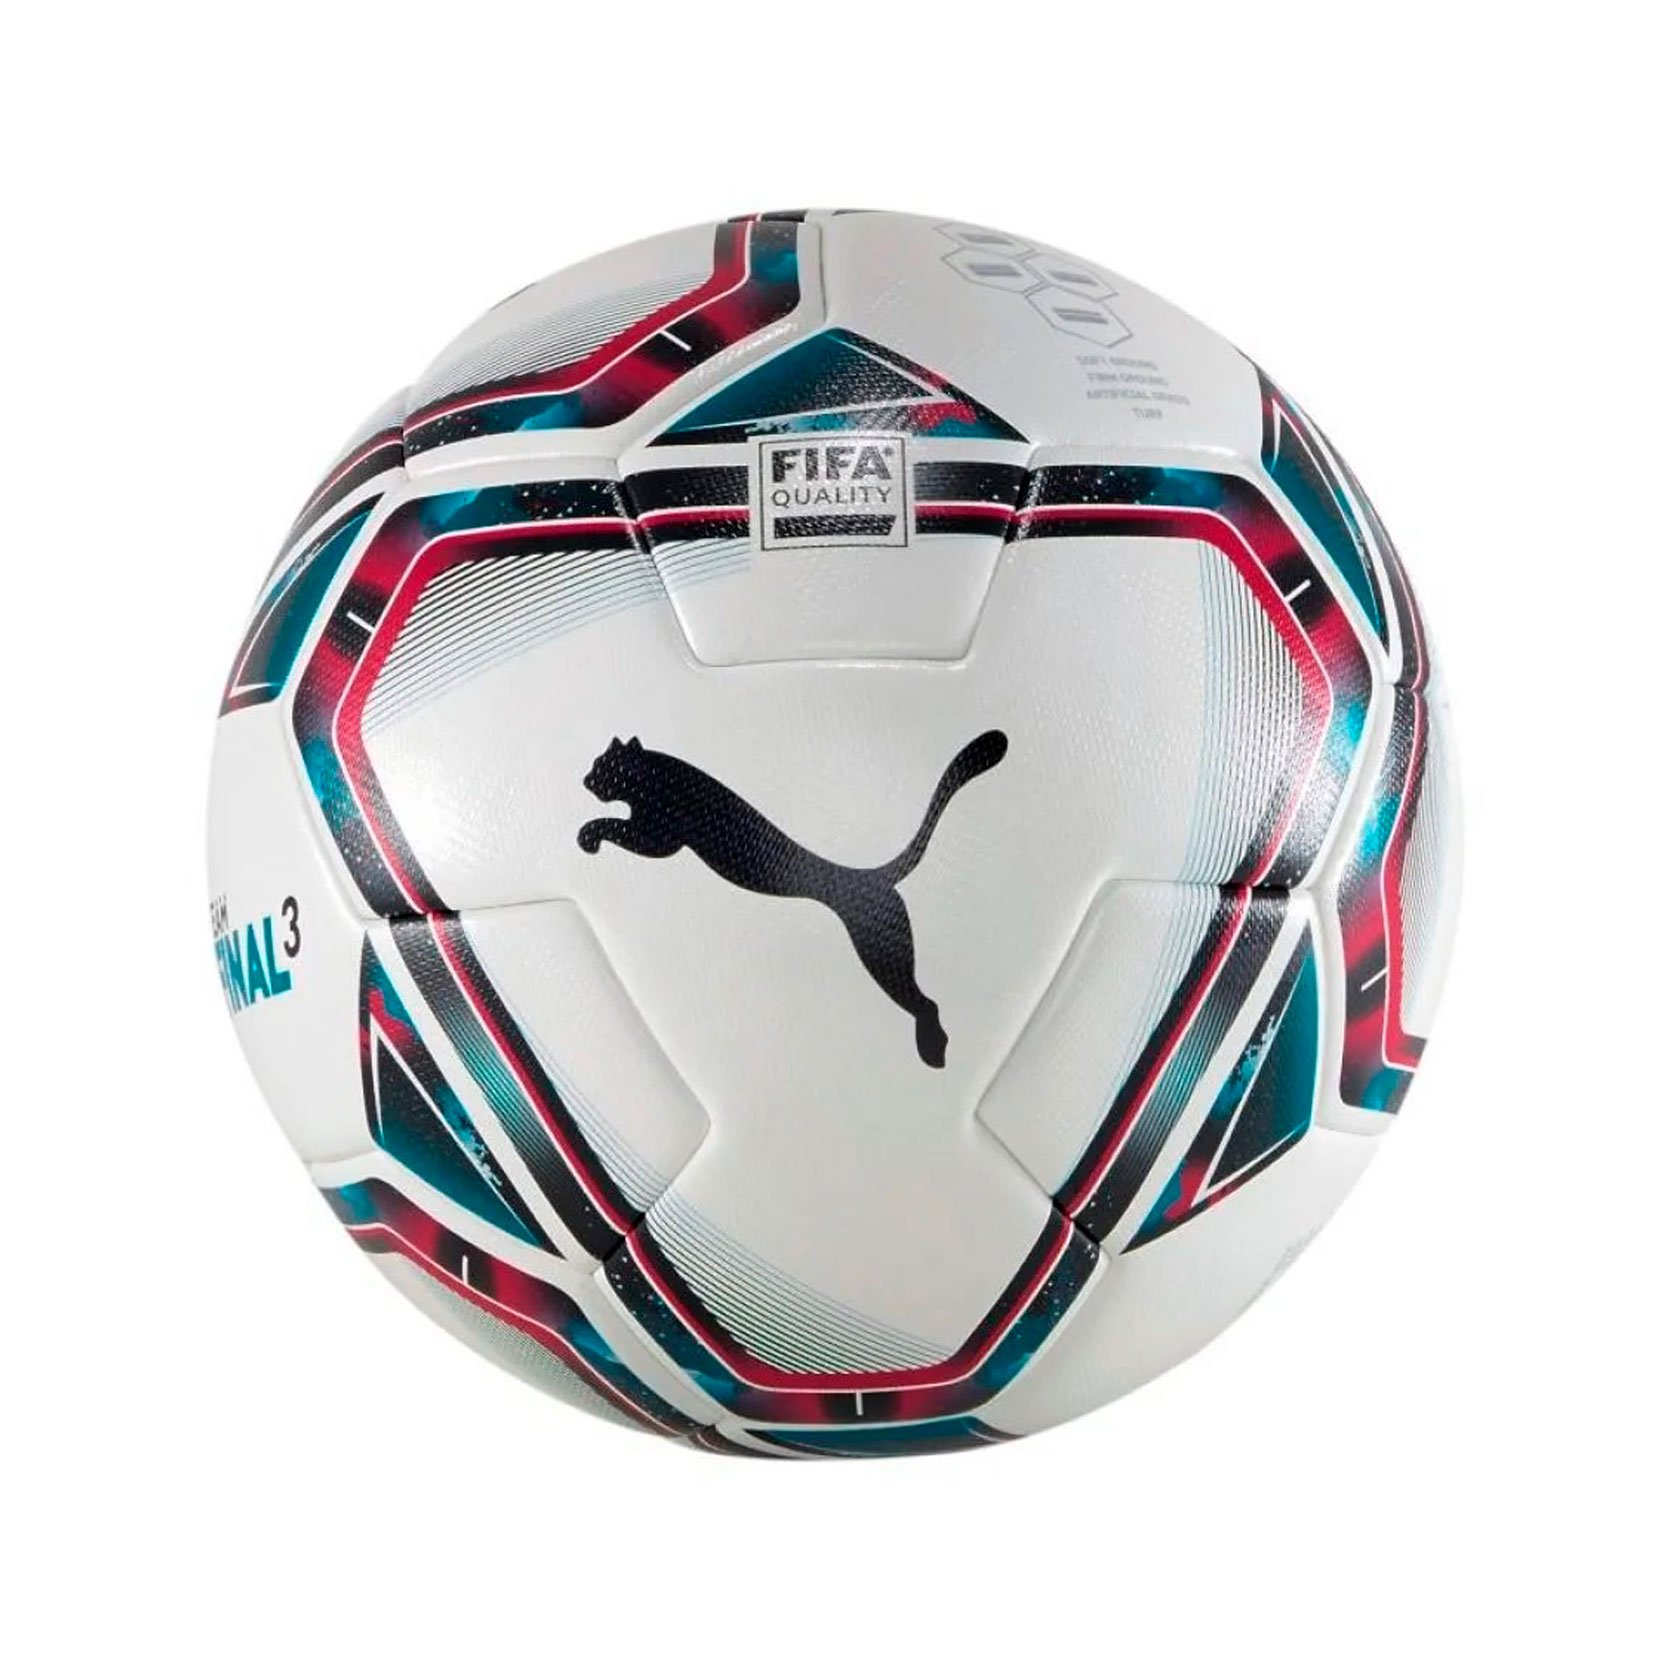 Мяч футбольный Puma teamFINAL 21.3 FIFA Quality Ball размер 5